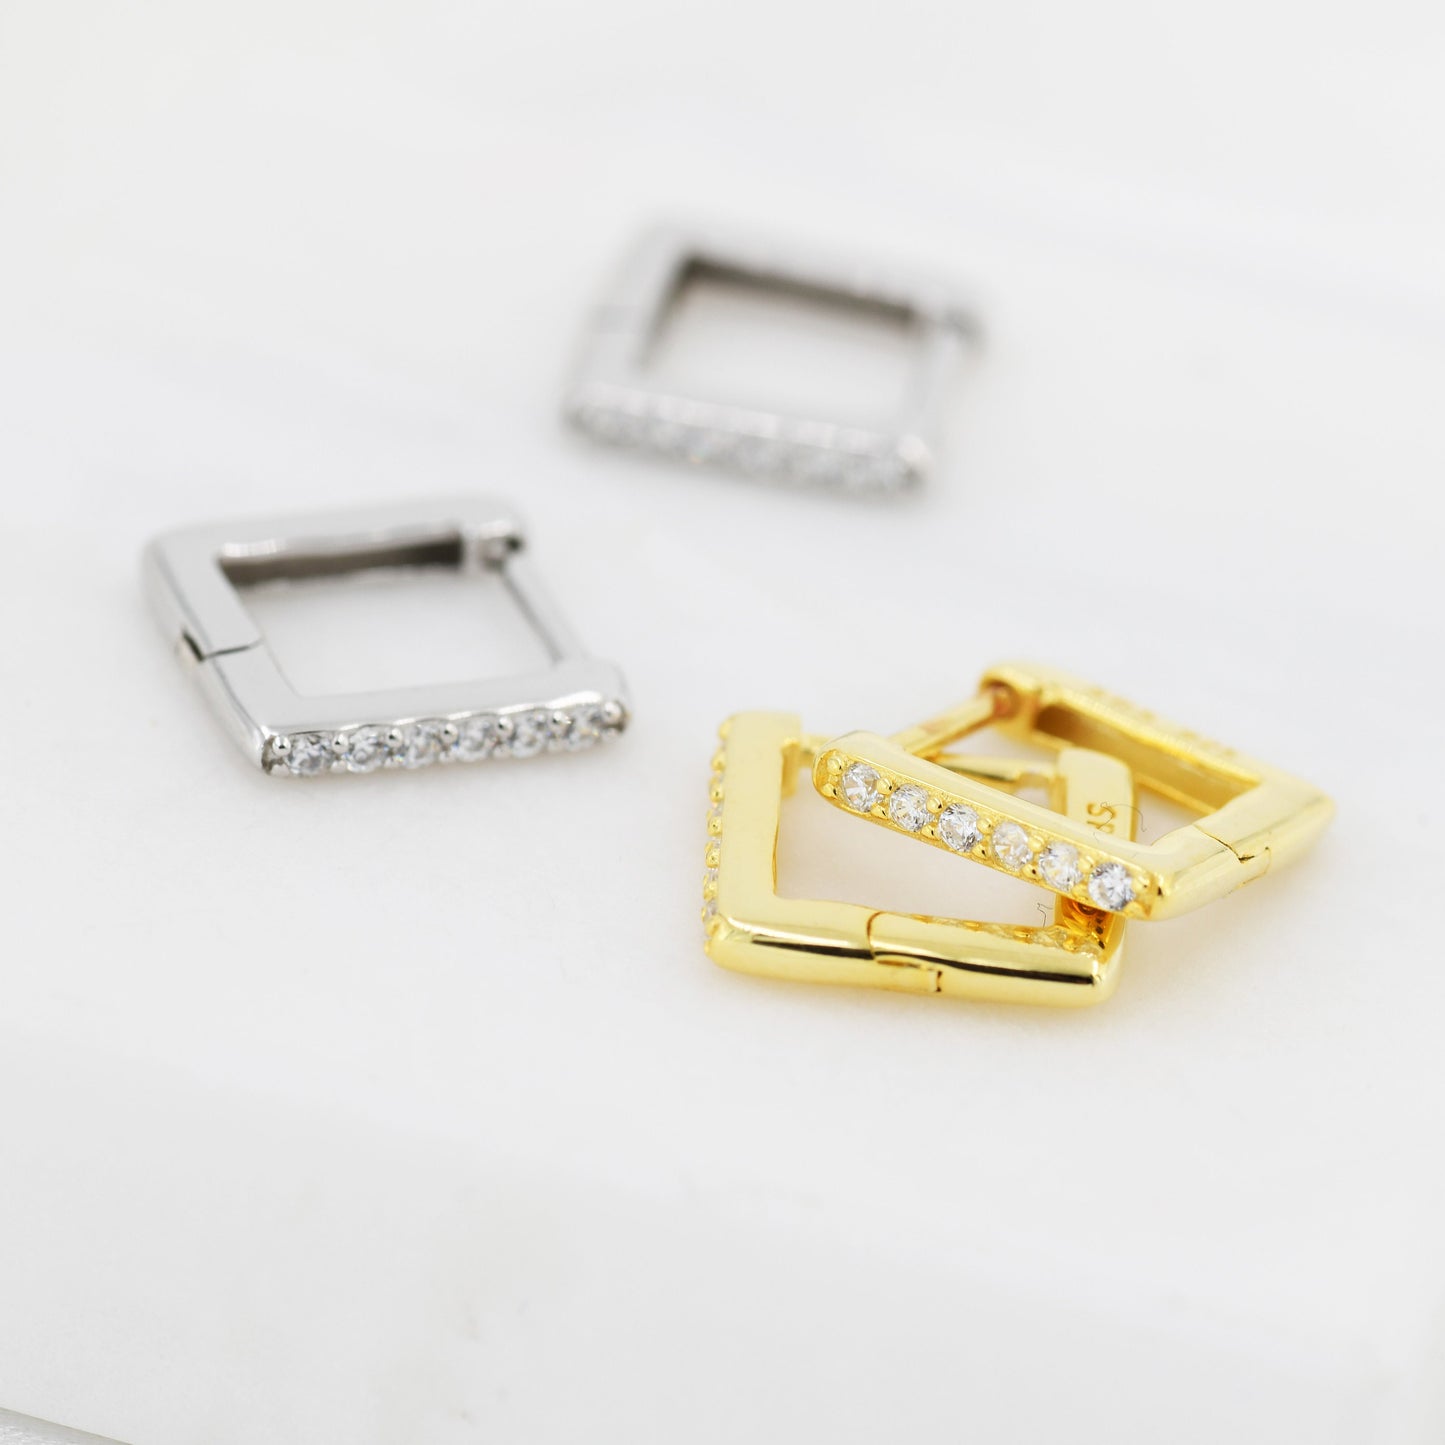 CZ Pave Square Huggie Hoop in Sterling Silver, Skinny Geometric Hoop Earrings, Gold or Silver, 8mm Minimalist Hoops